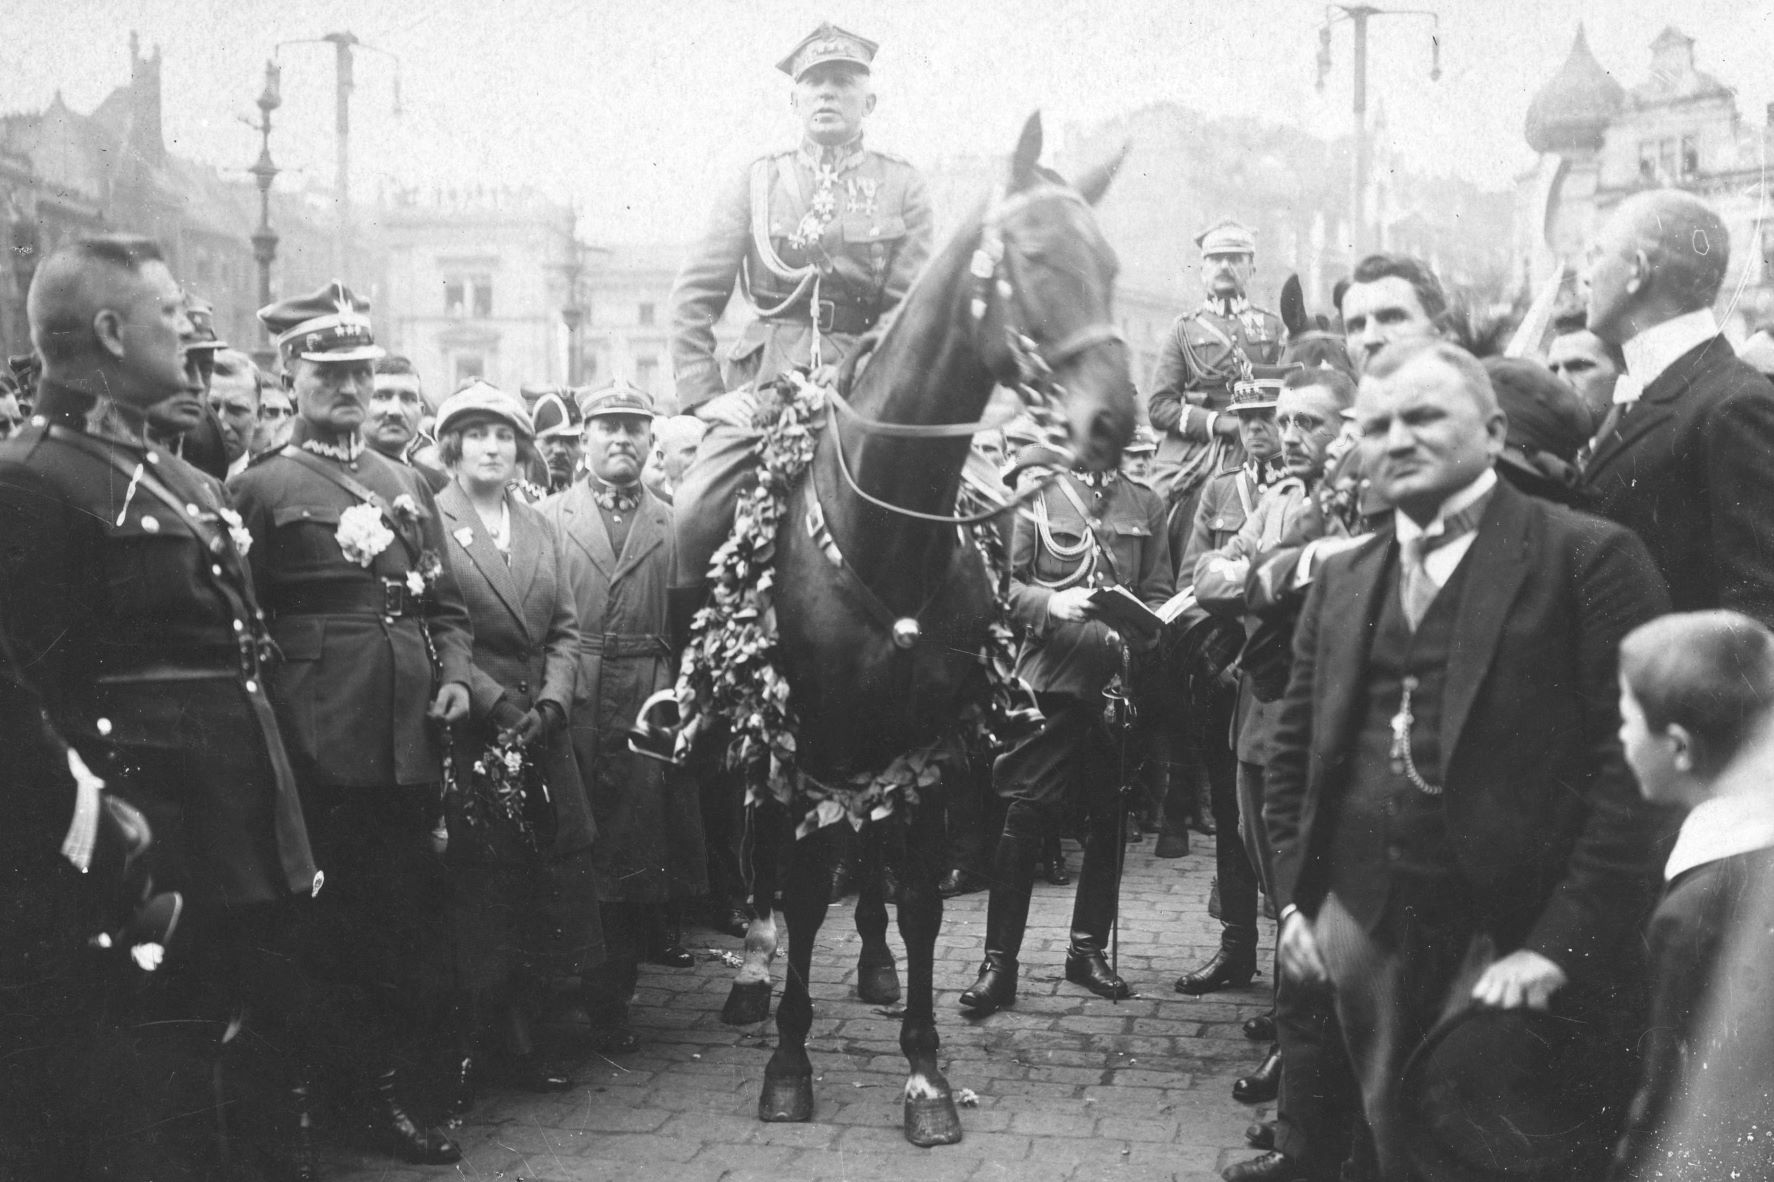 Archiwalne zdjęcie, na którym gen. Stanisław Szeptycki siedzący na przystrojonym koniu, wkroczył do Katowic w 1922 roku. Po jego obydwu stronach tłum ludzi robiących mu przejście